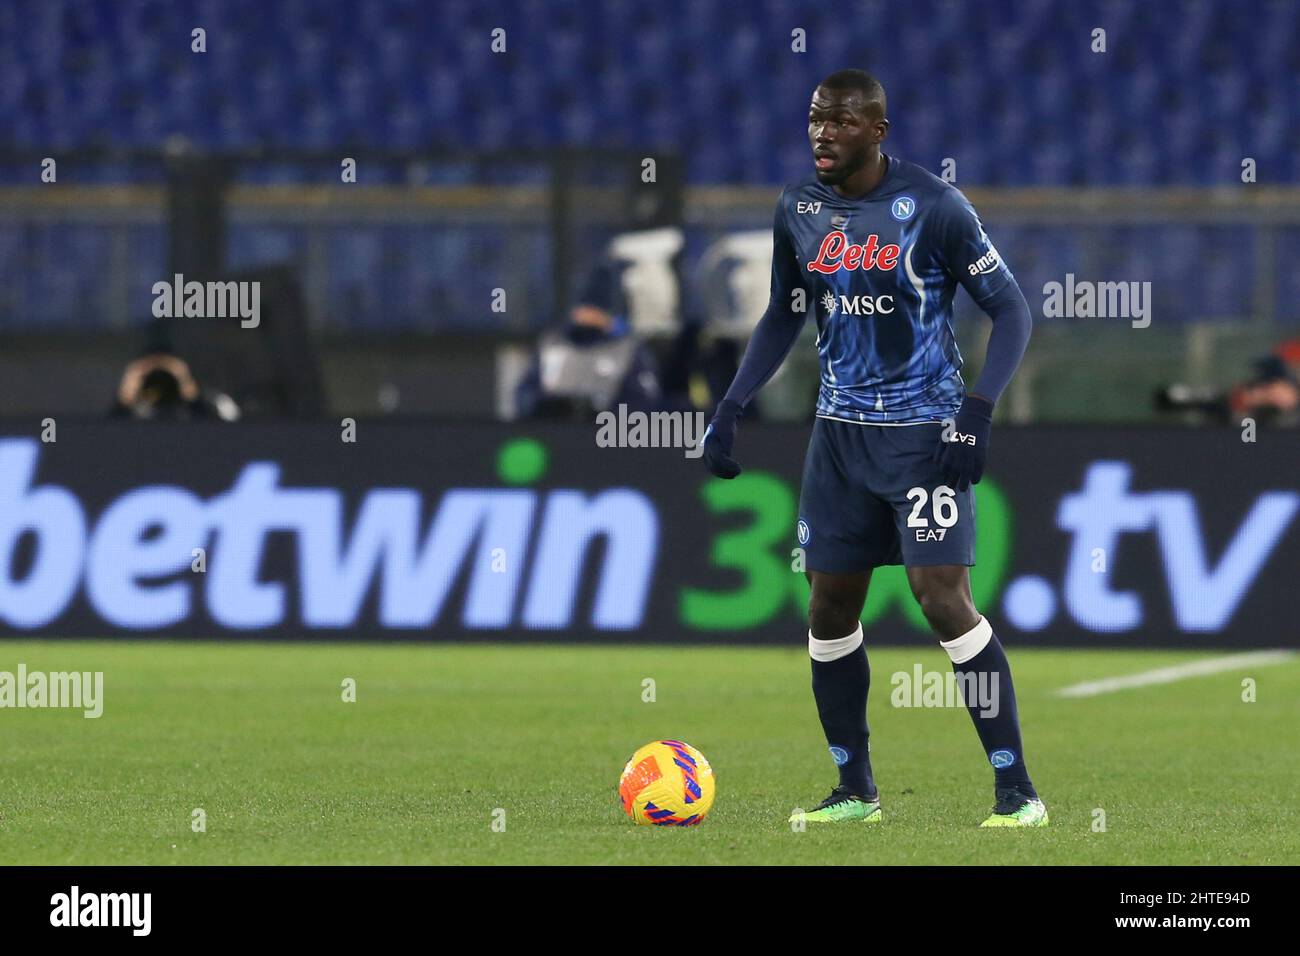 Der senegalesische Verteidiger des SSC Napoli, Kalidou Koulibaly, kontrolliert den Ball während des Fußballspiels der Serie A zwischen der SS Lazio und dem SSC Napoli. Napoli gewann 2:1. Stockfoto